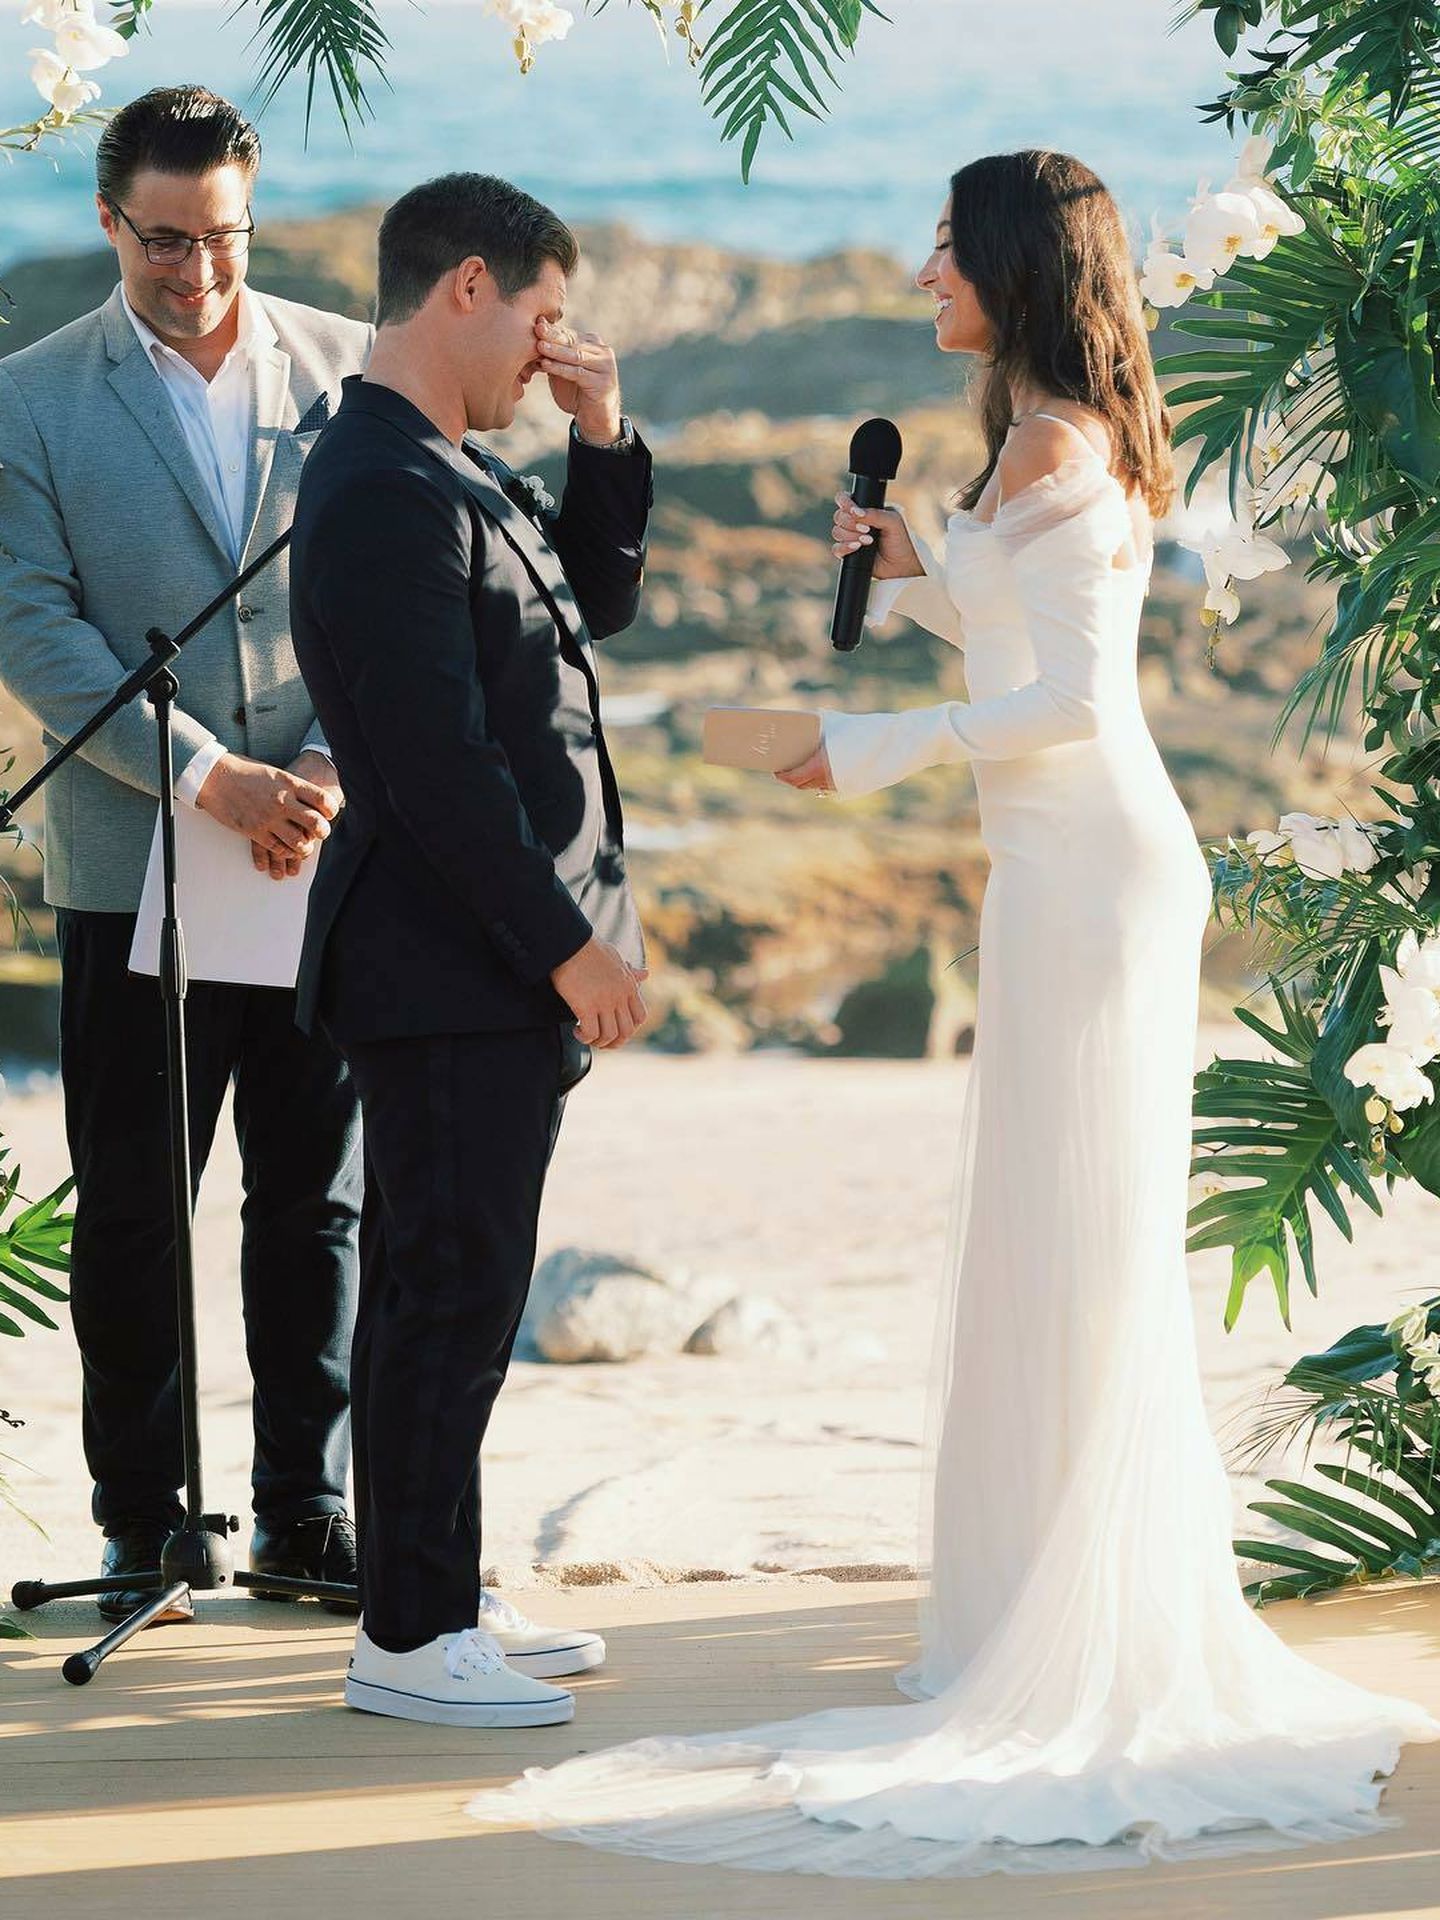 La boda frente al mar de Adam Devine y Chloe Bridges. (Instagram/@chloebridges)